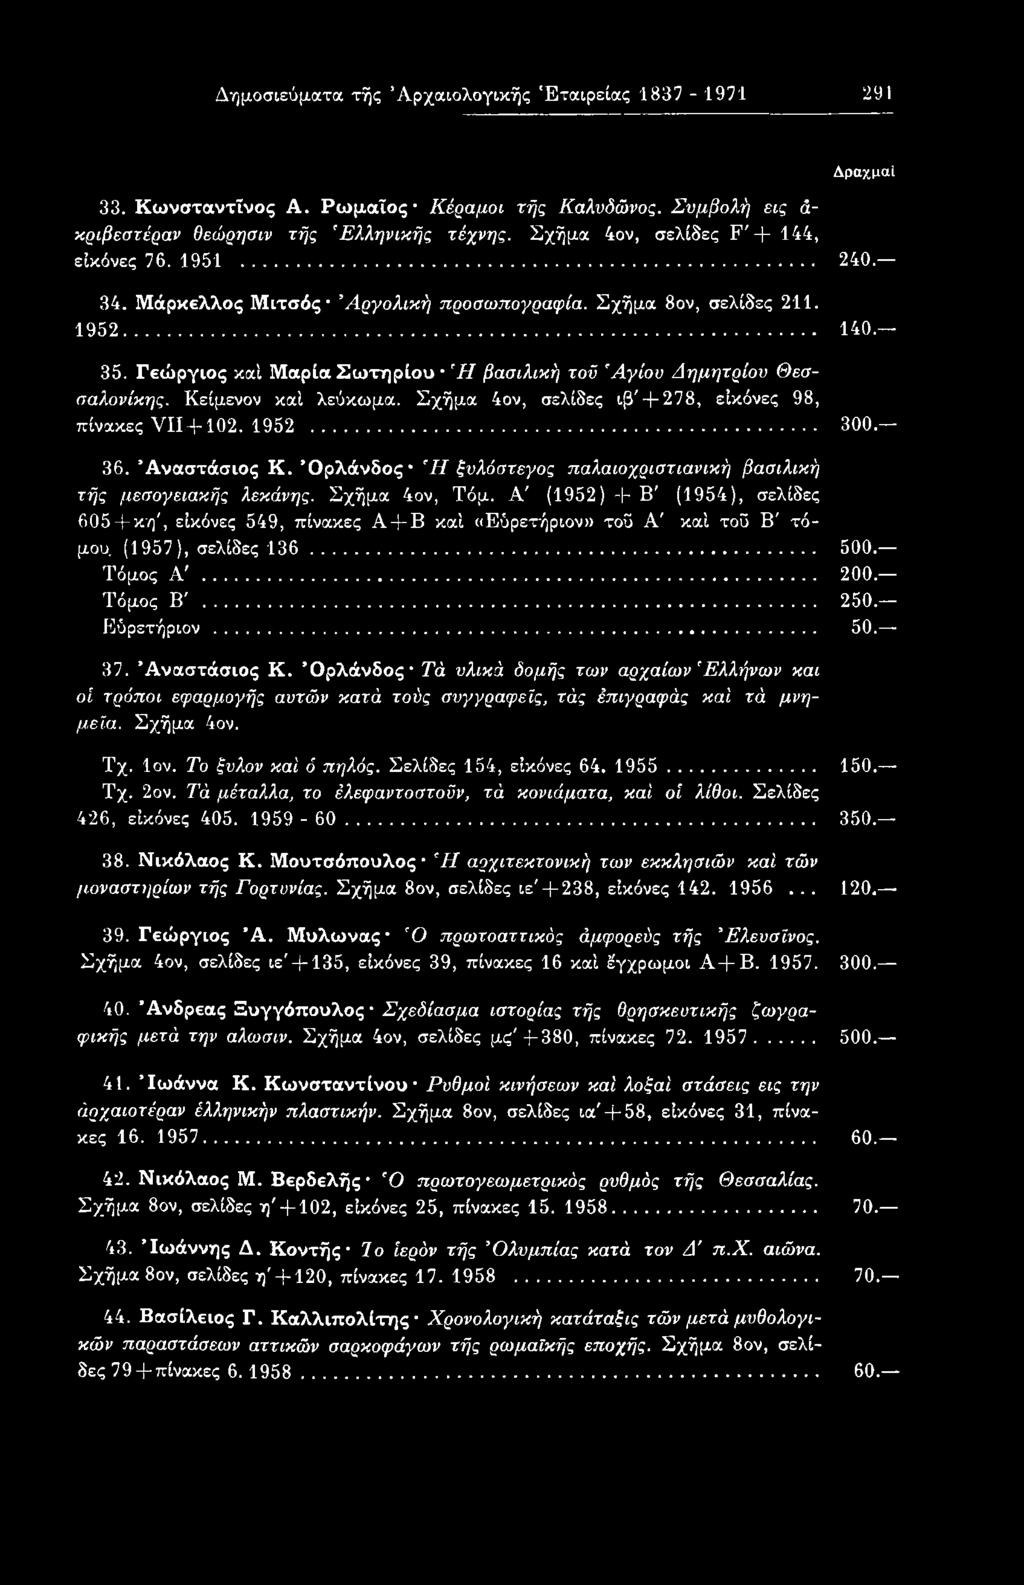 (1957), σελίδες 136... 500. Τόμος Α'... 200. Τόμος Β'... 250. Εύρετήριον... 50. 37. Αναστάσιος Κ.